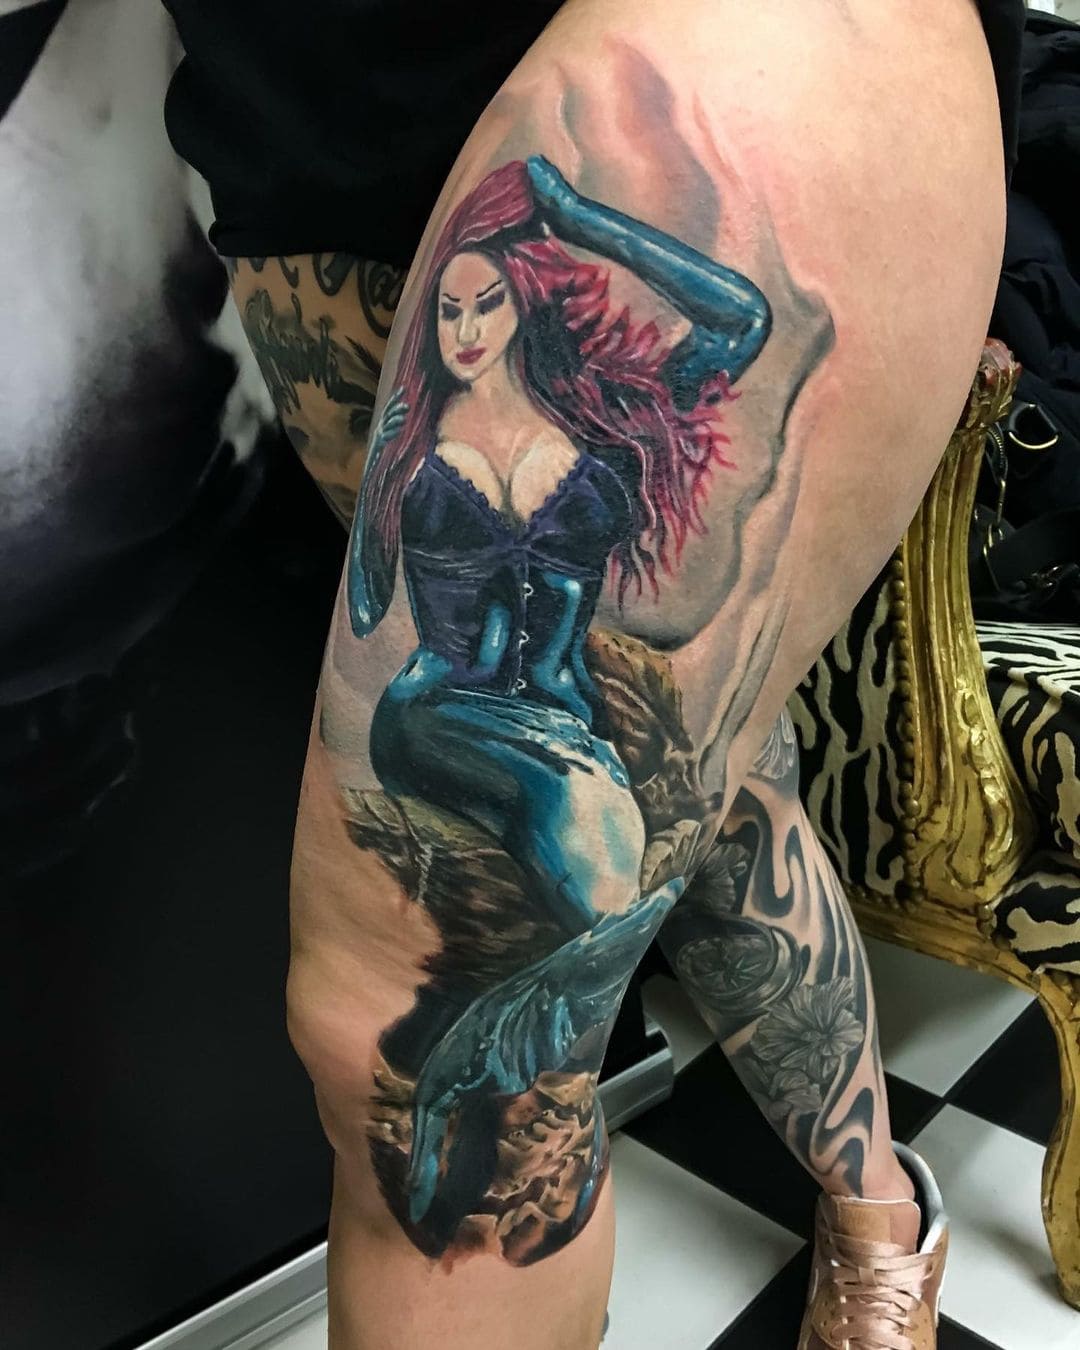 Lorraine - San Antonio Female Tattoo Artist